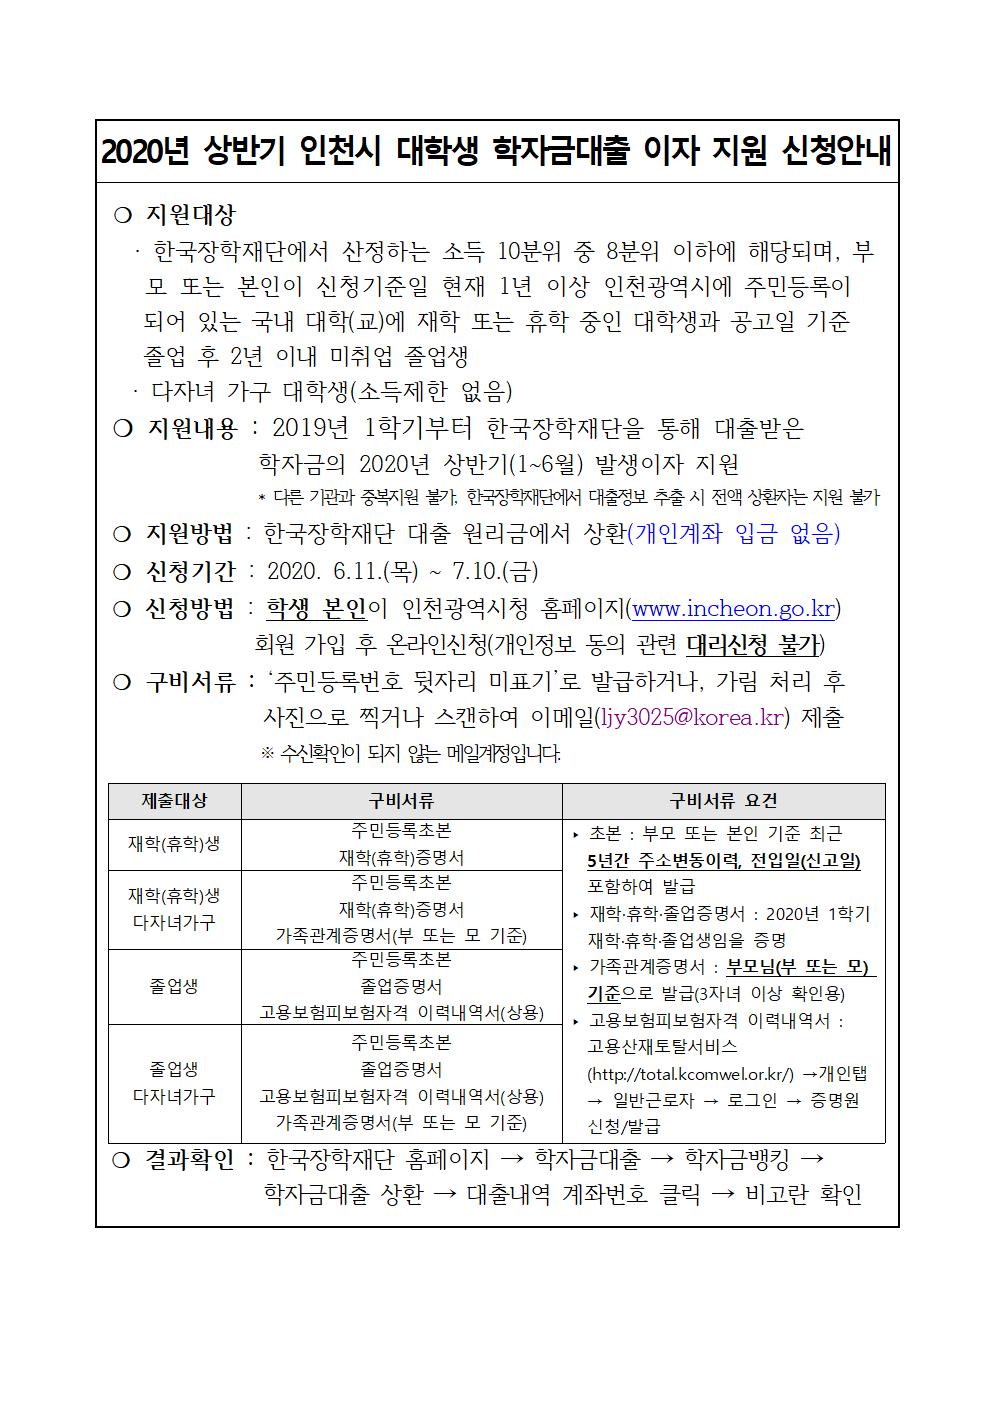 2020-1 인천시 대학생 학자금대출 이자지원 안내